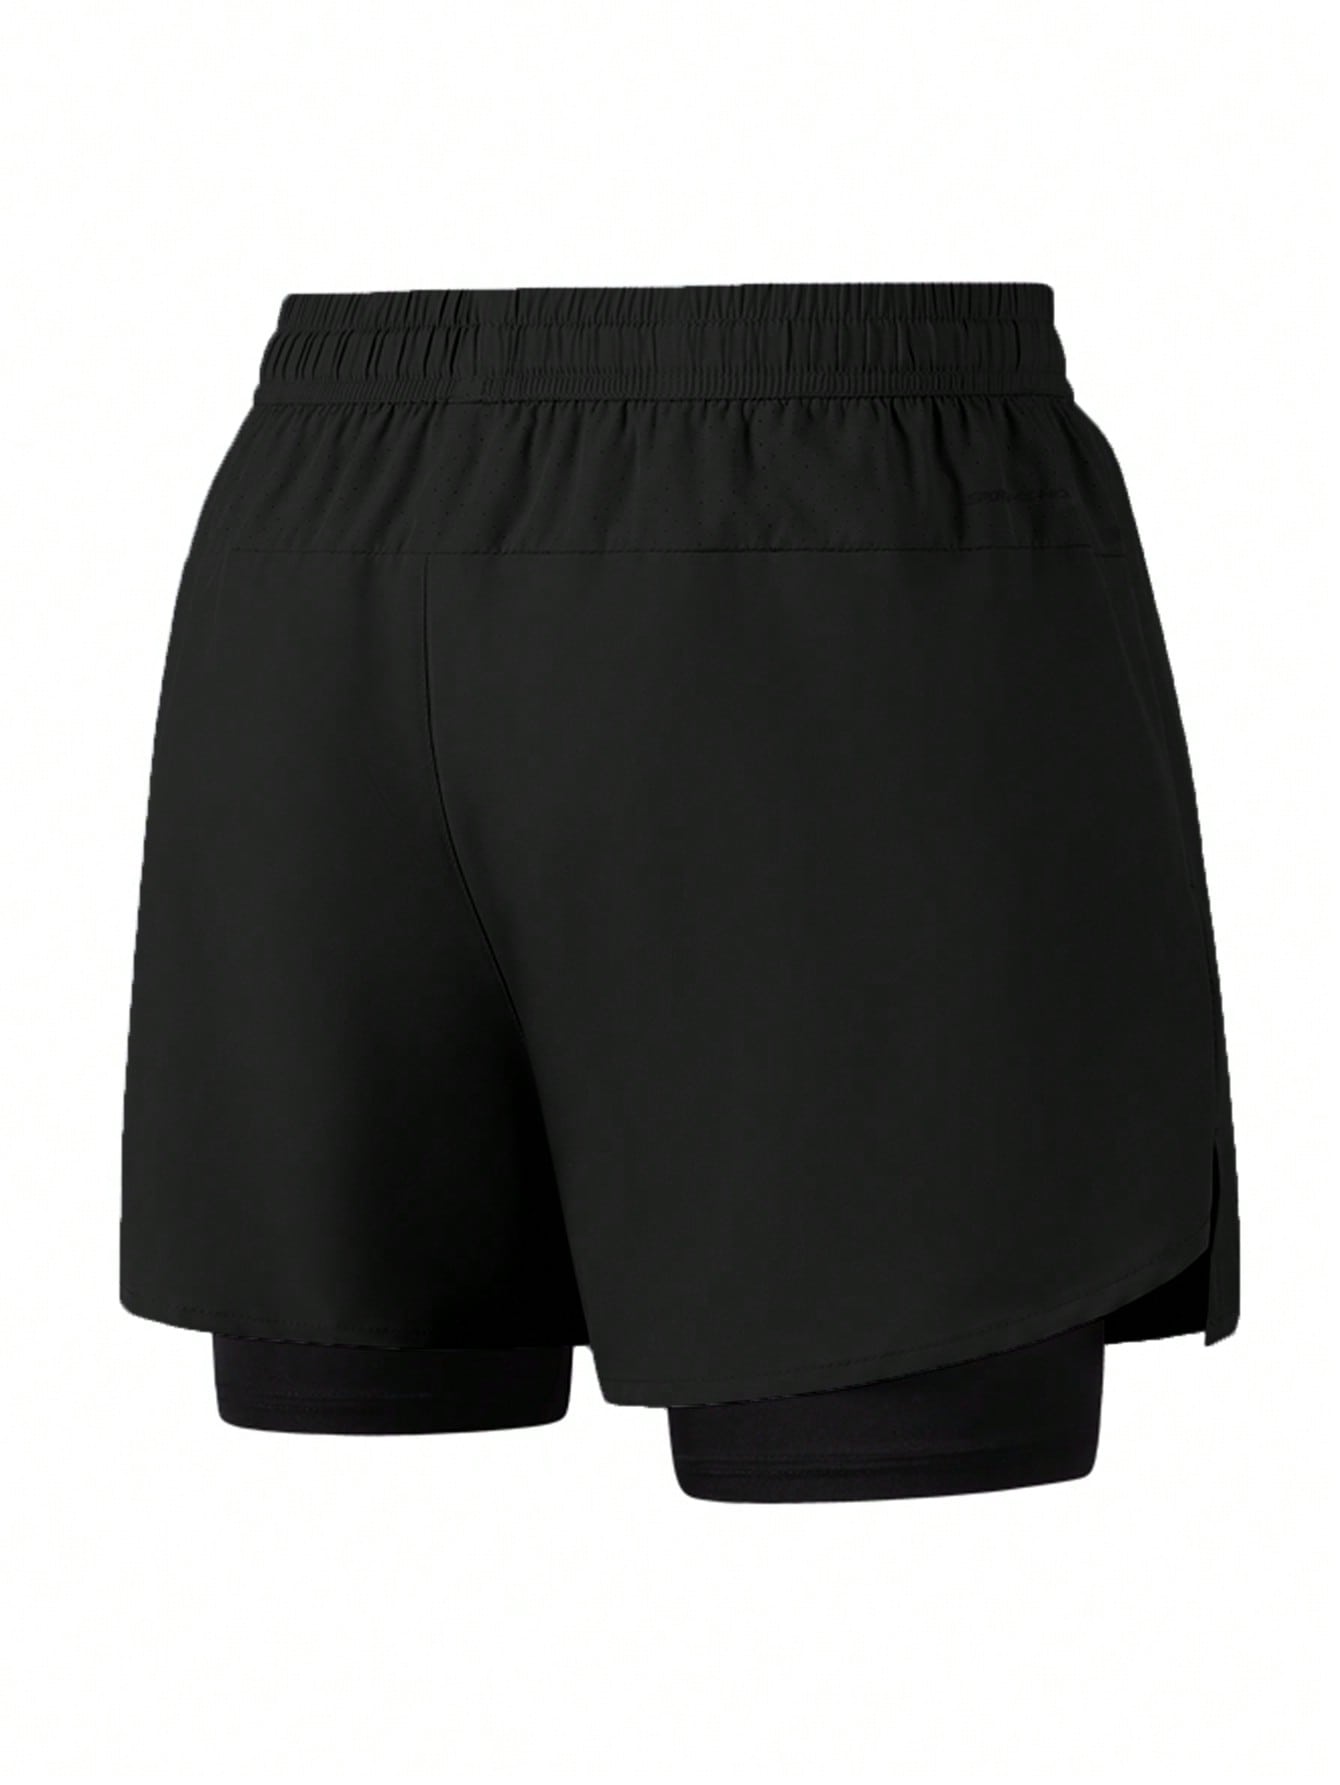 1 шт. Мужские быстросохнущие дышащие спортивные шорты из двух частей, черный носки мужские черные 1 шт 3 шт